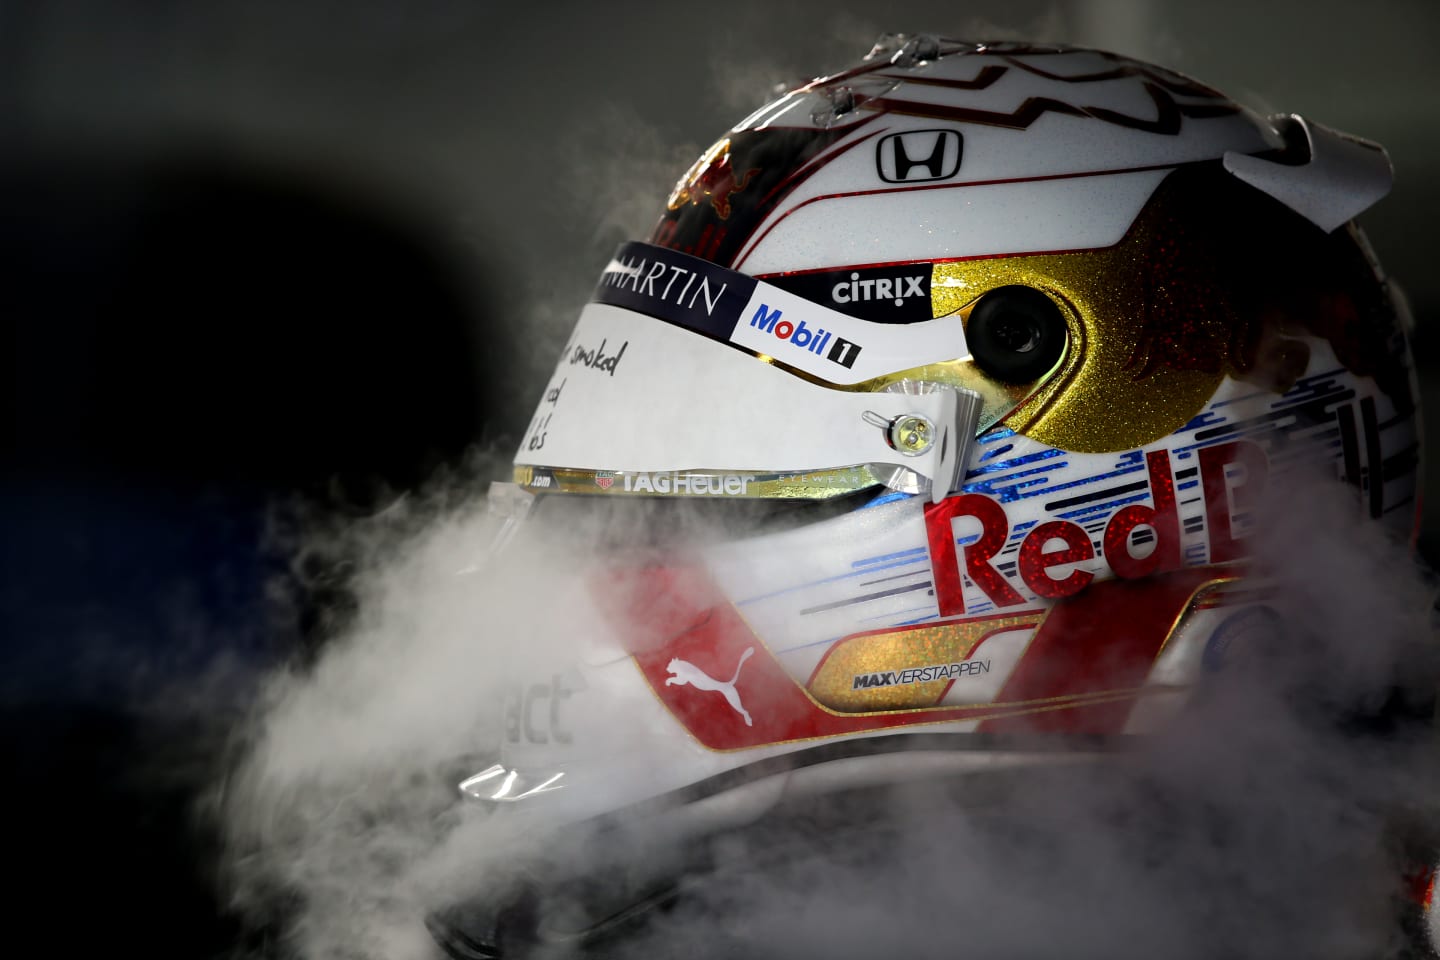 SINGAPORE, SINGAPORE - SEPTEMBER 20: The helmet of Max Verstappen of Netherlands and Red Bull